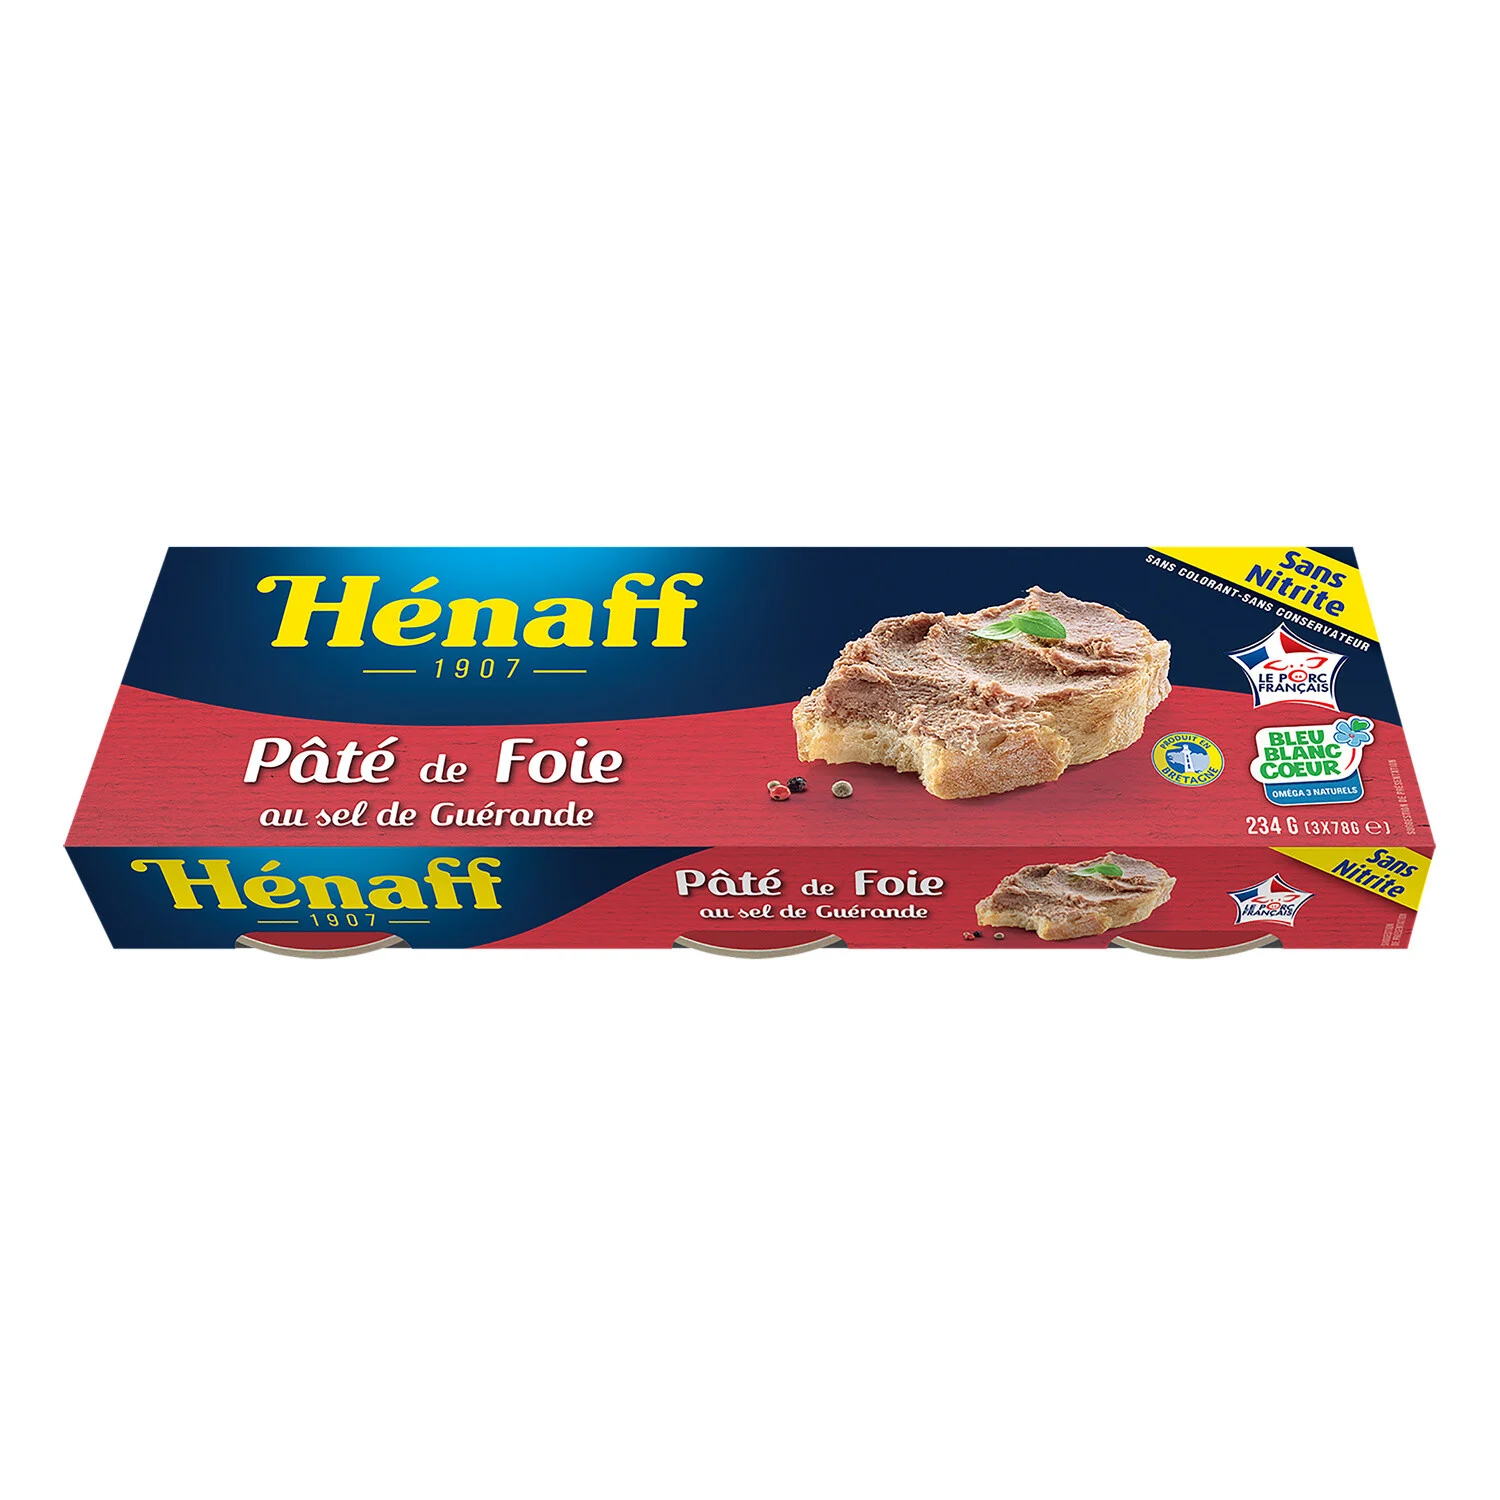 3x1 10 Patè Di Foie Henaff